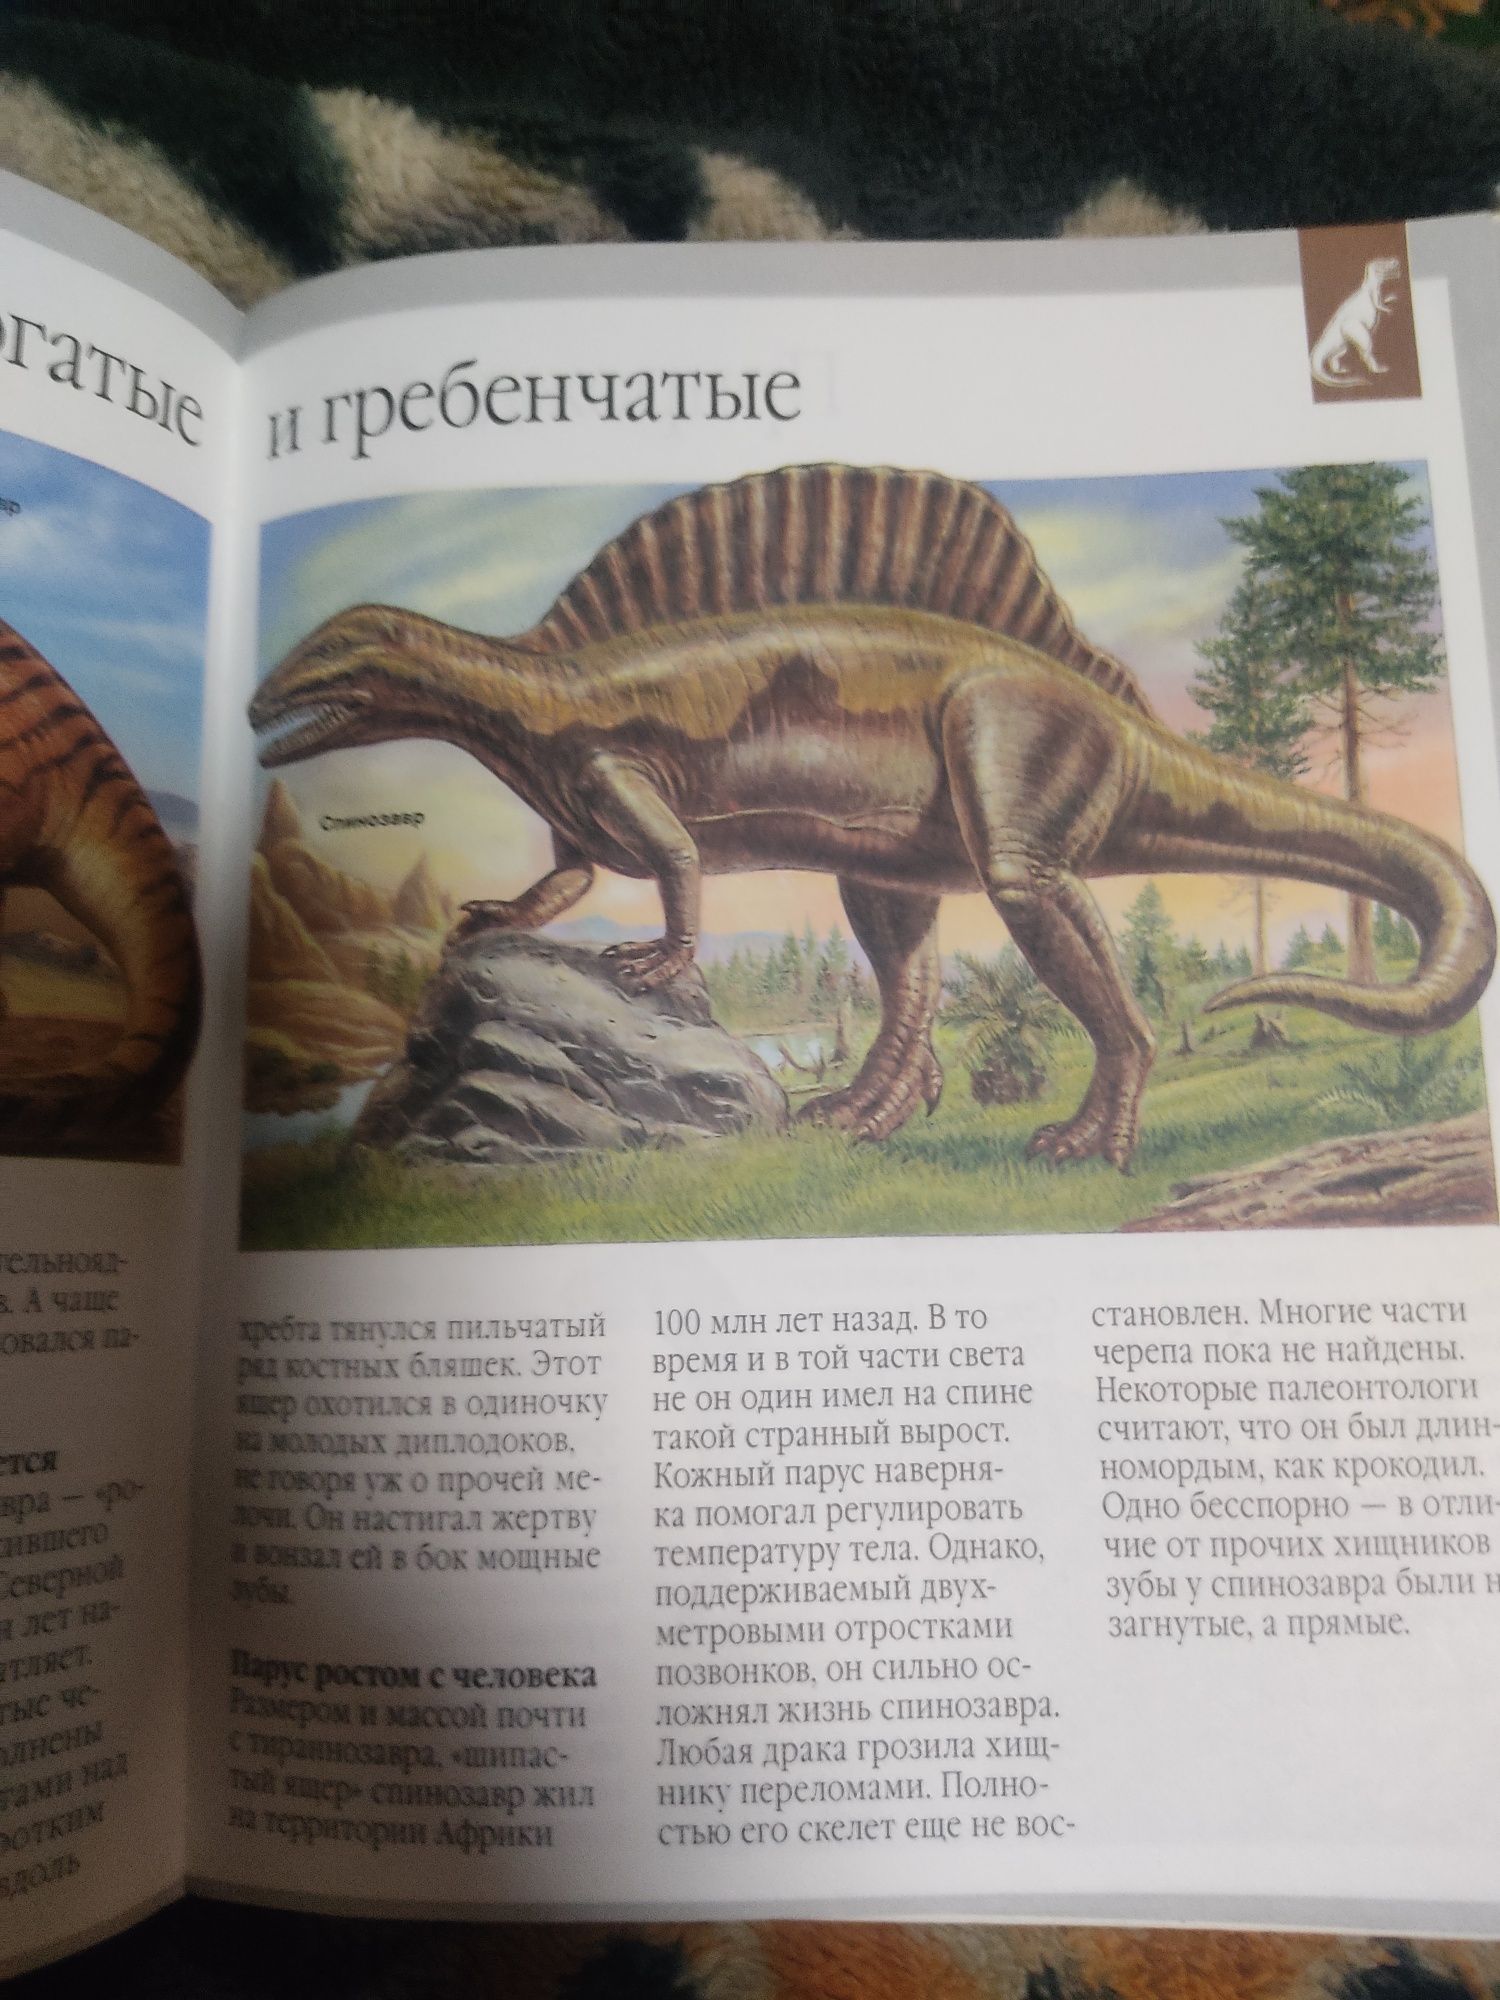 Продам книгу динозавры